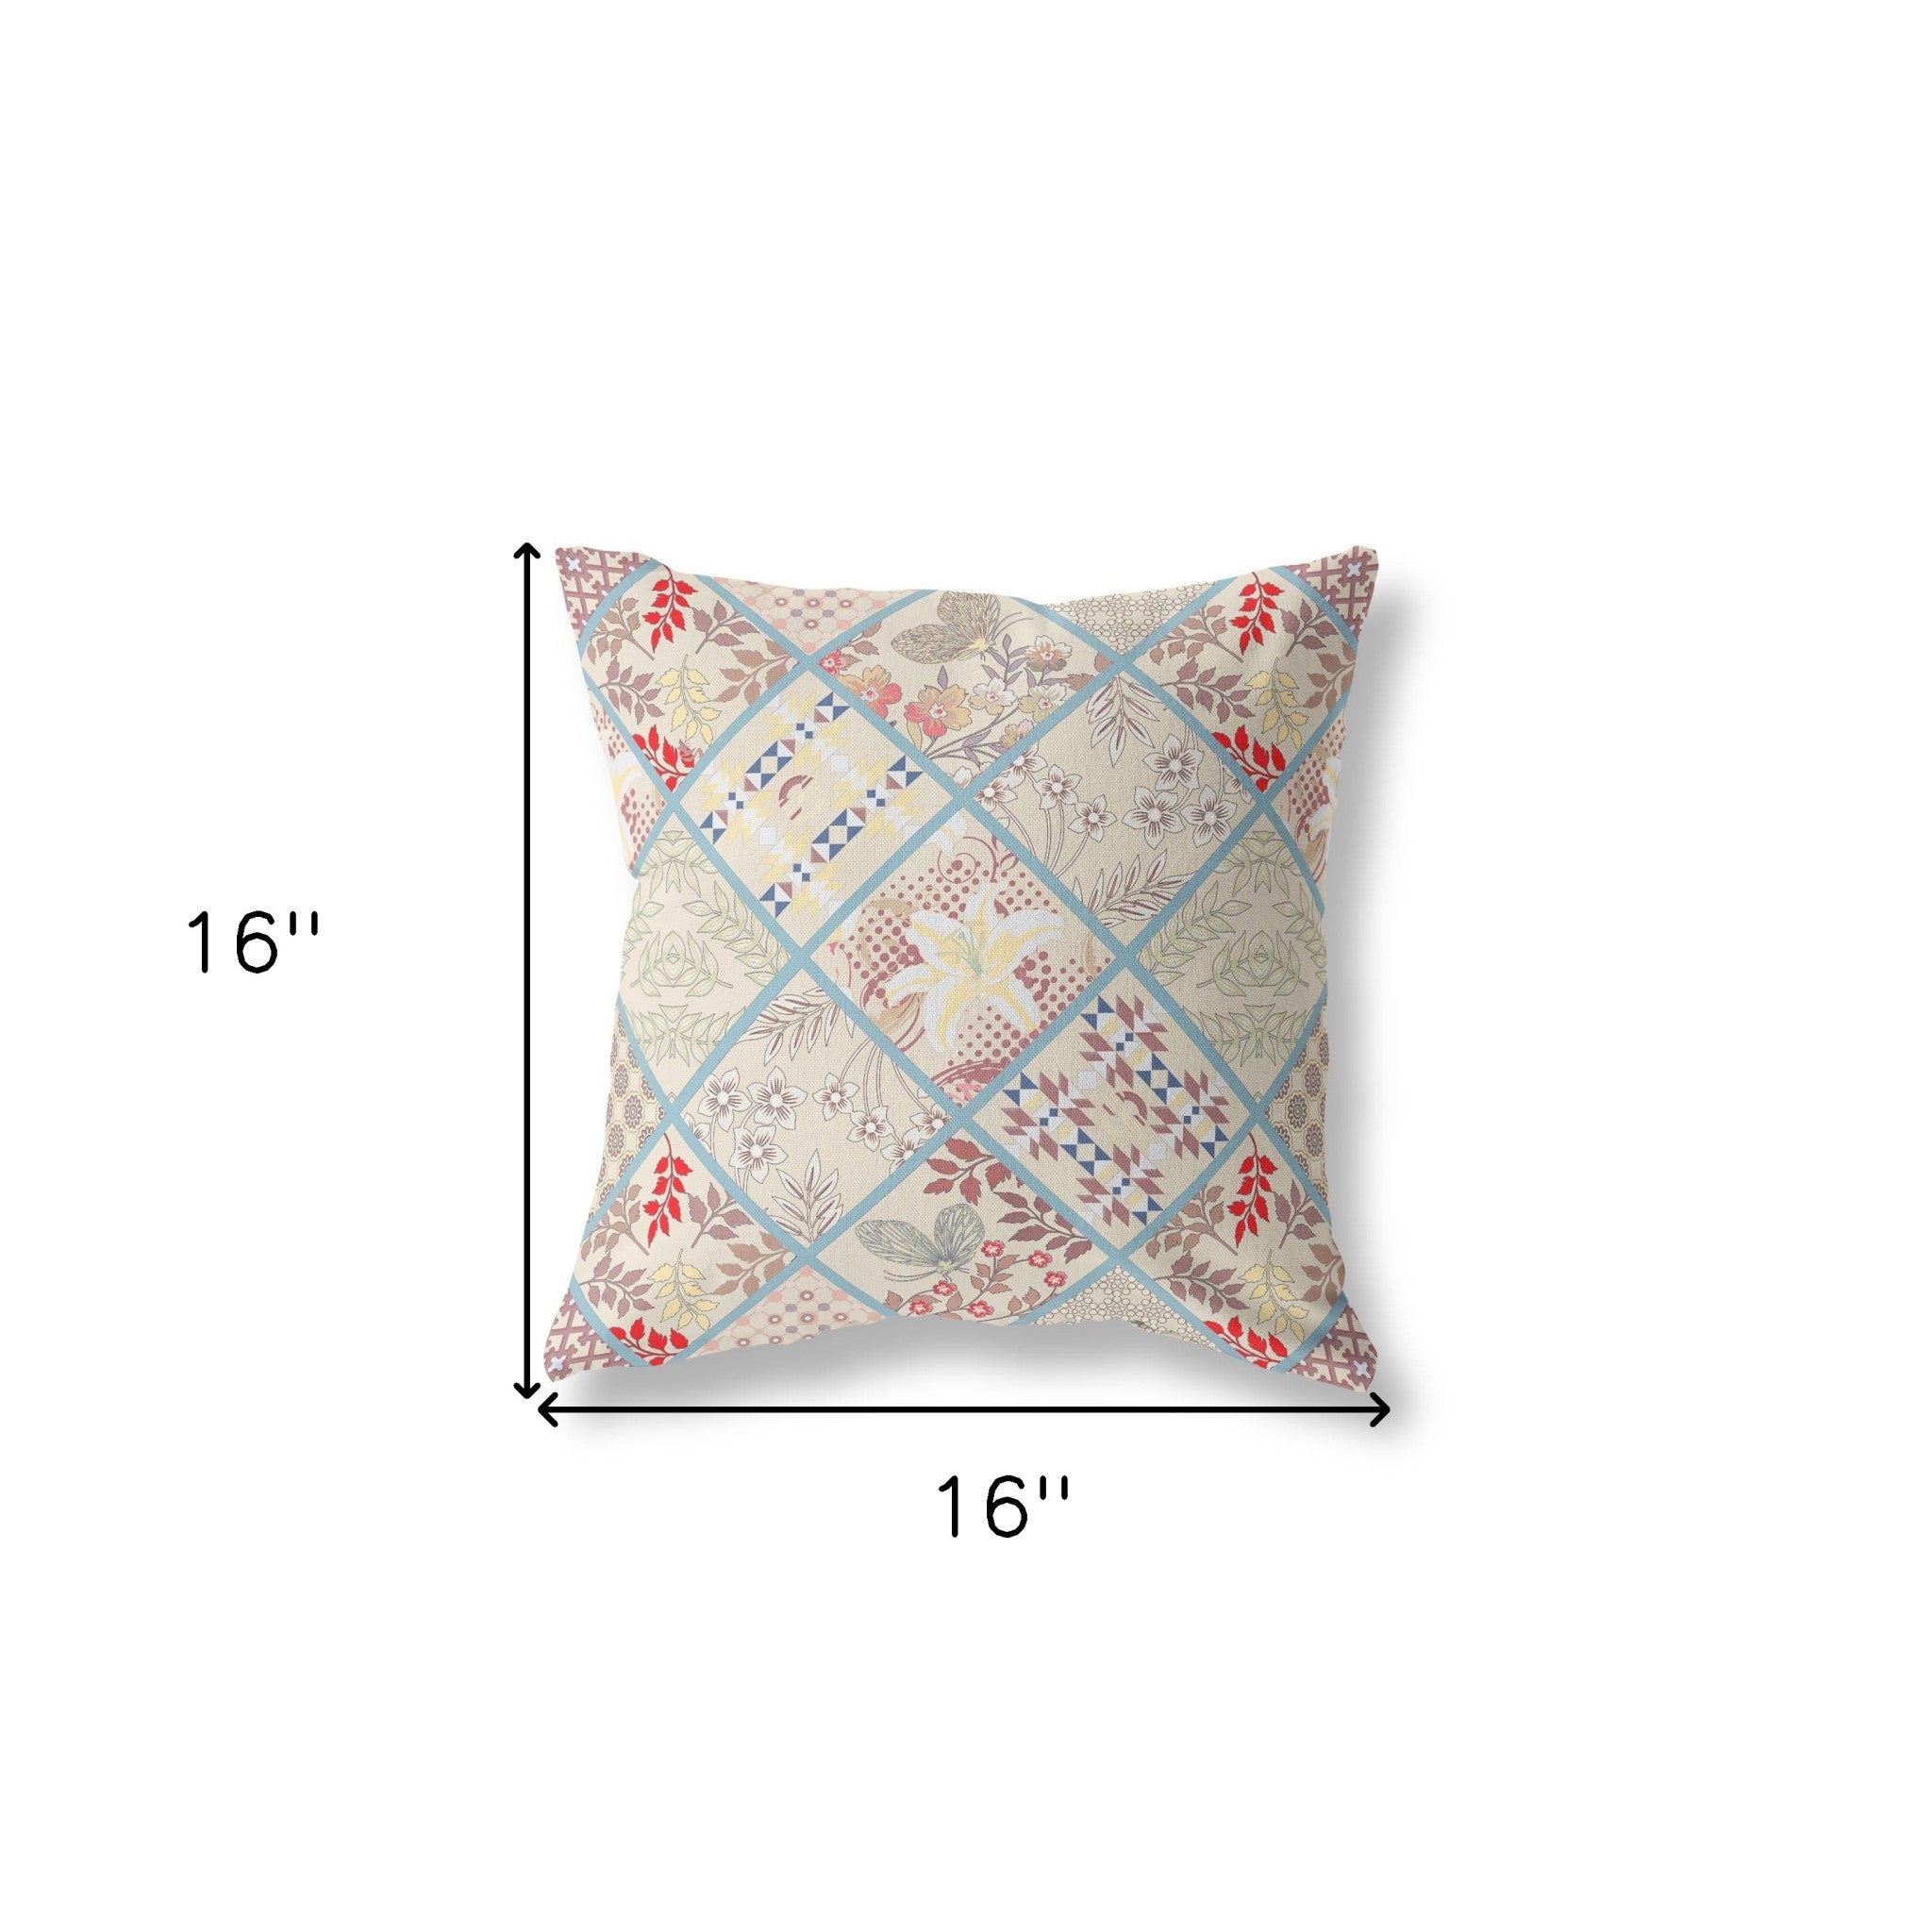 16” Cream Red Patch Indoor Outdoor Throw Pillow